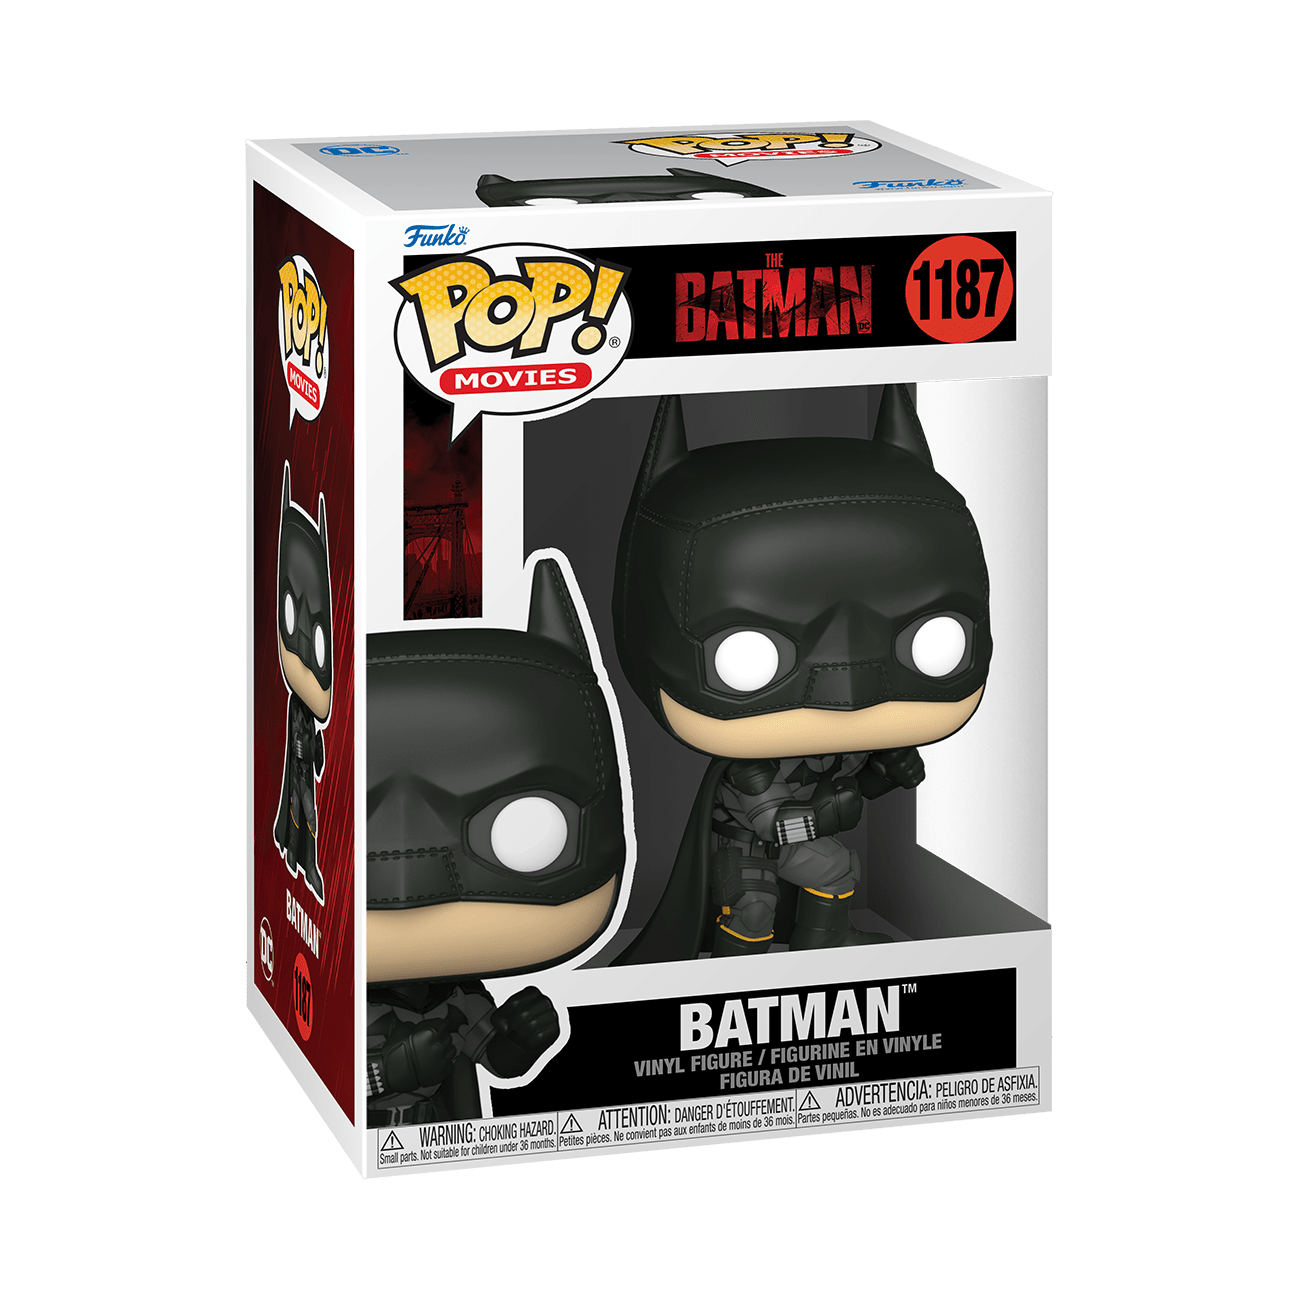 Pop Movies: The Batman - Pop 1